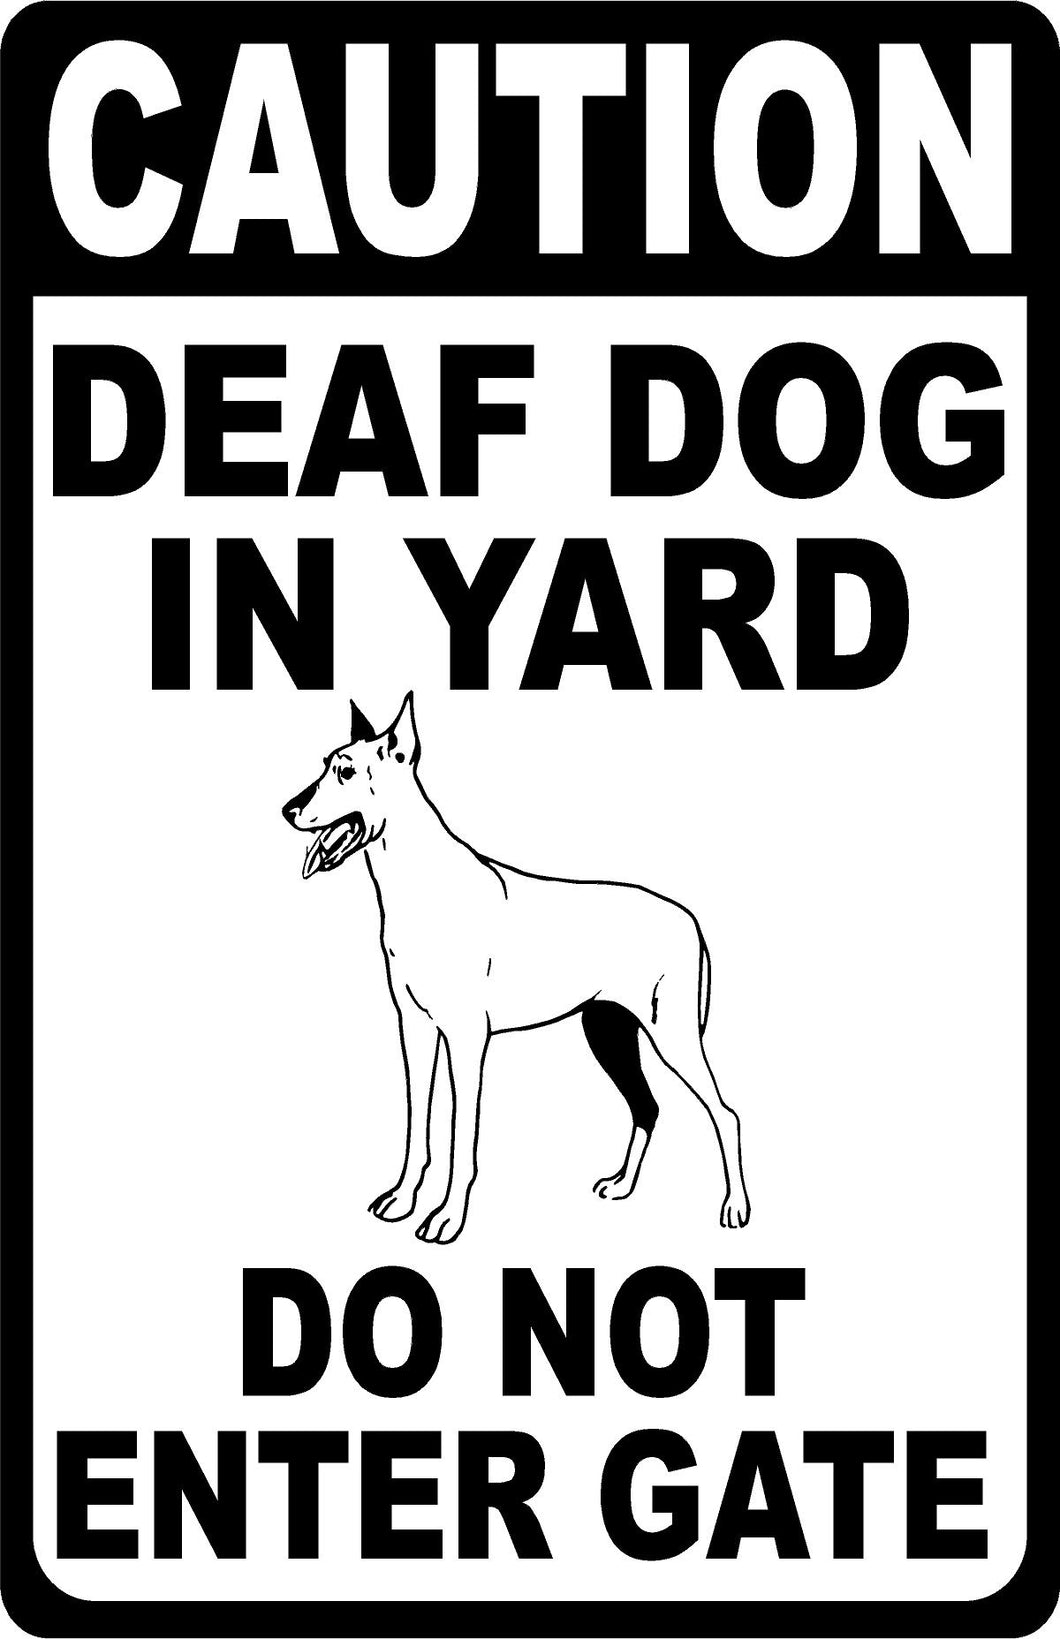 Caution Deaf Dog In Yard Do Not Enter Gate Sign